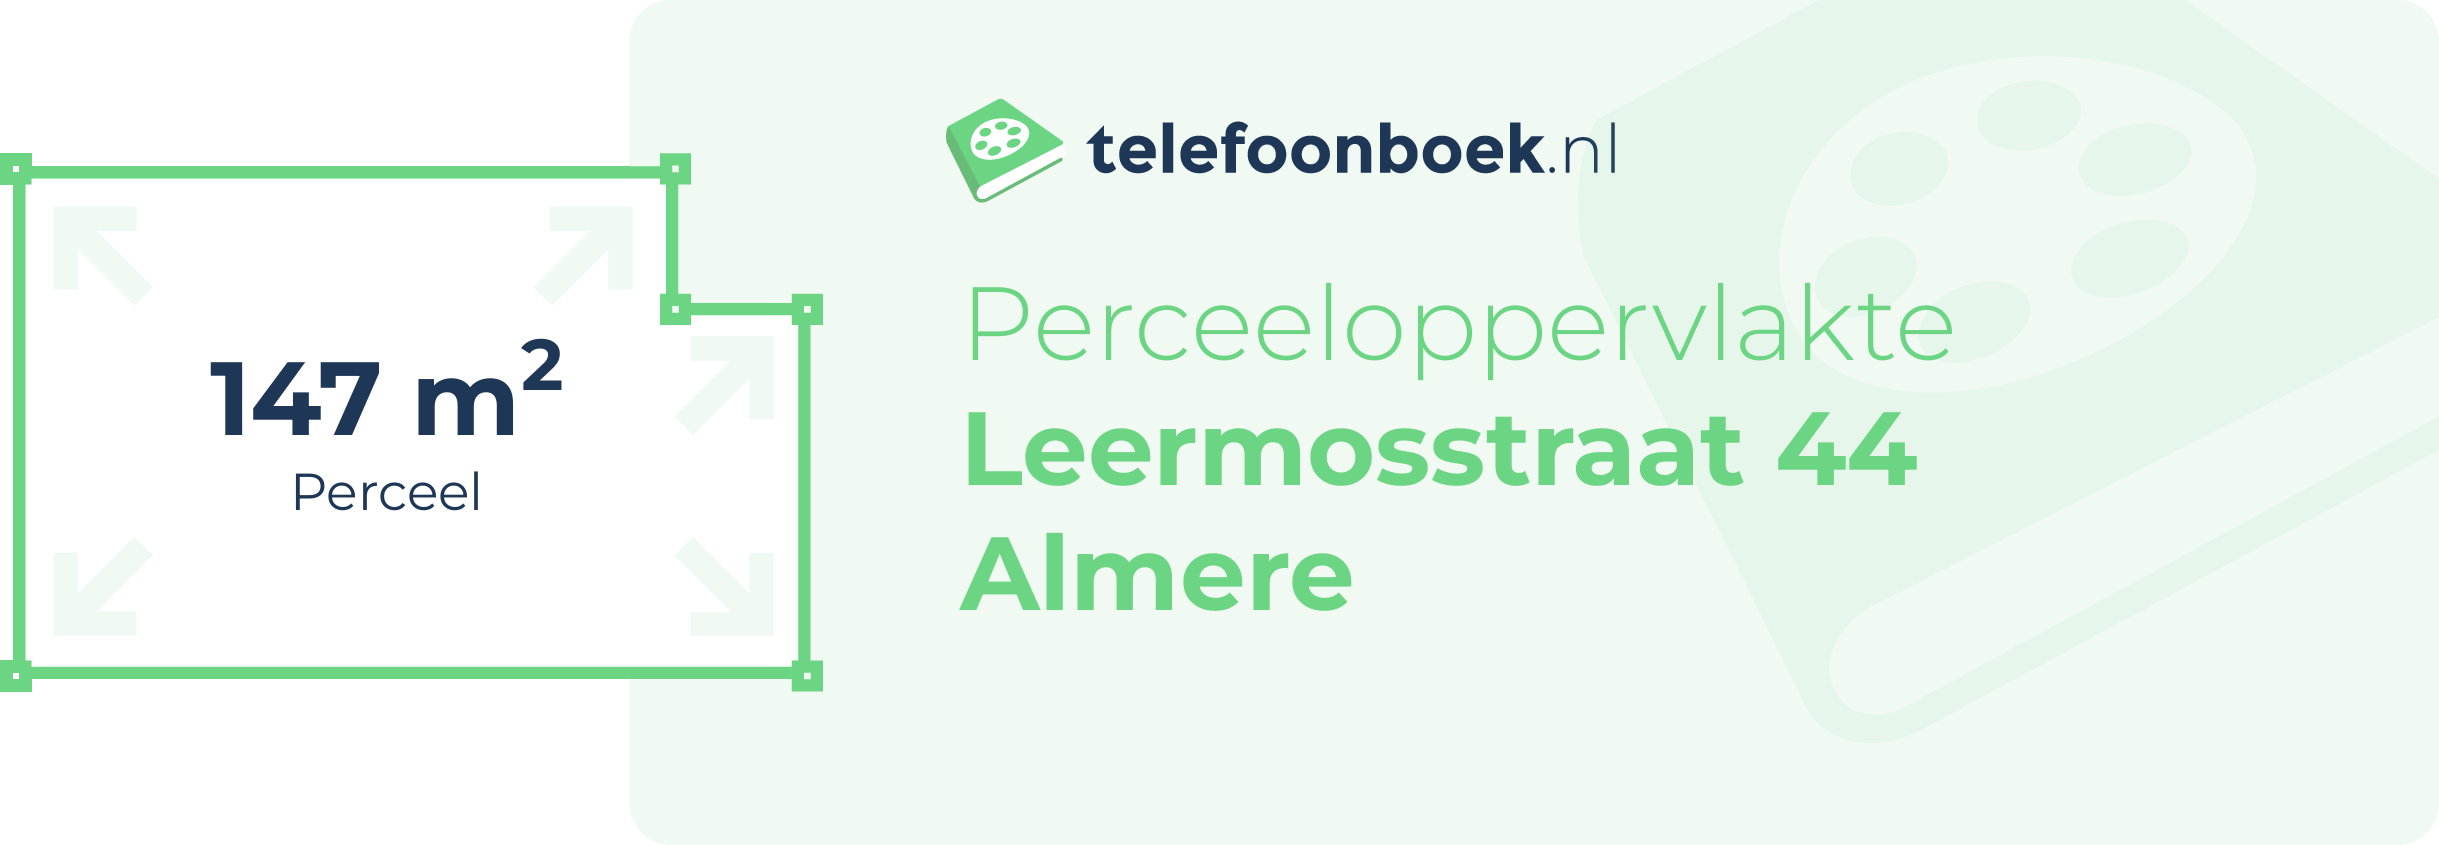 Perceeloppervlakte Leermosstraat 44 Almere